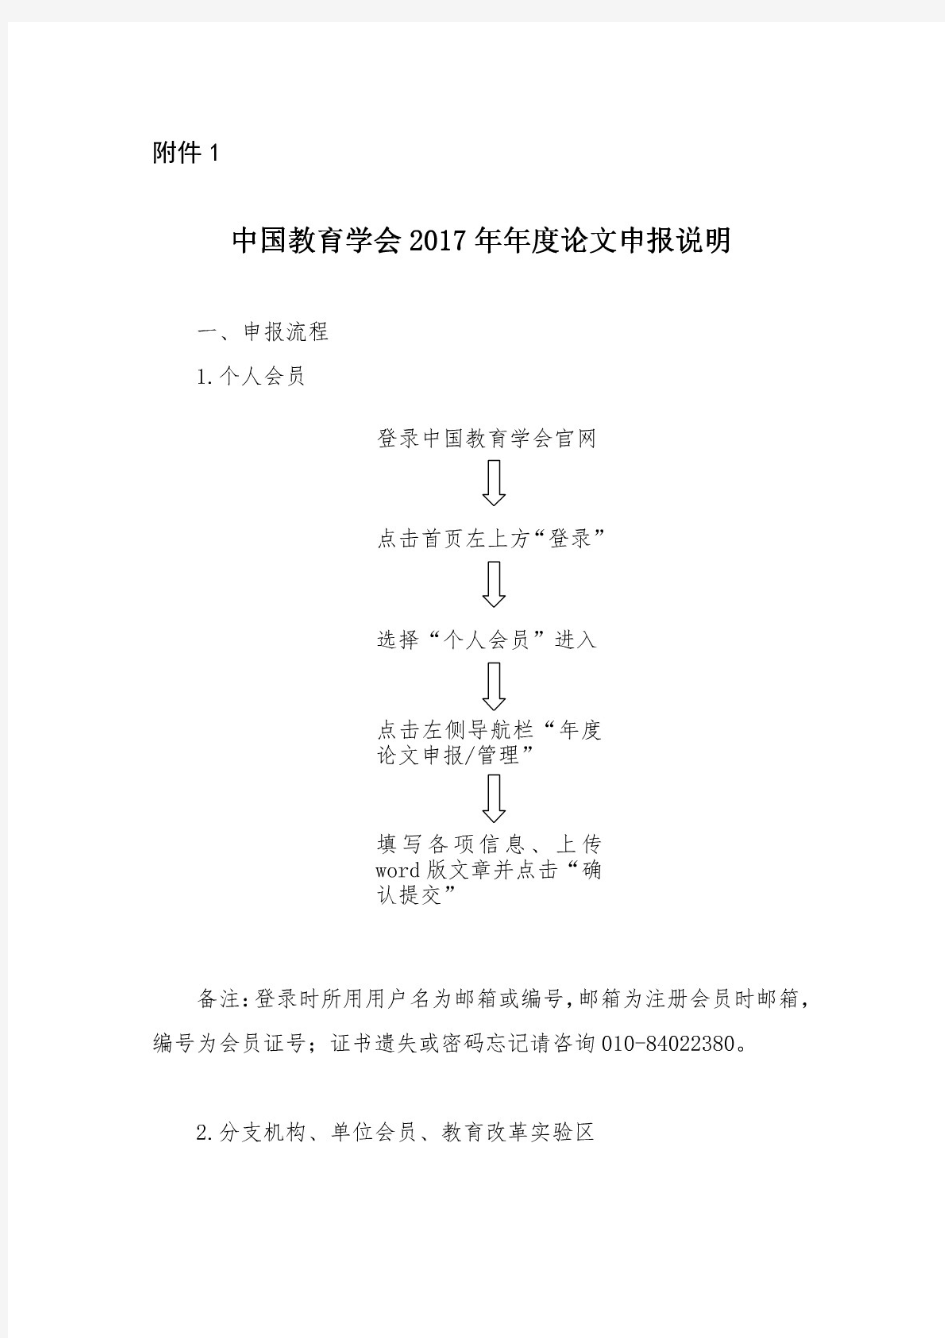 中国教育学会2017年年度论文征集申报说明